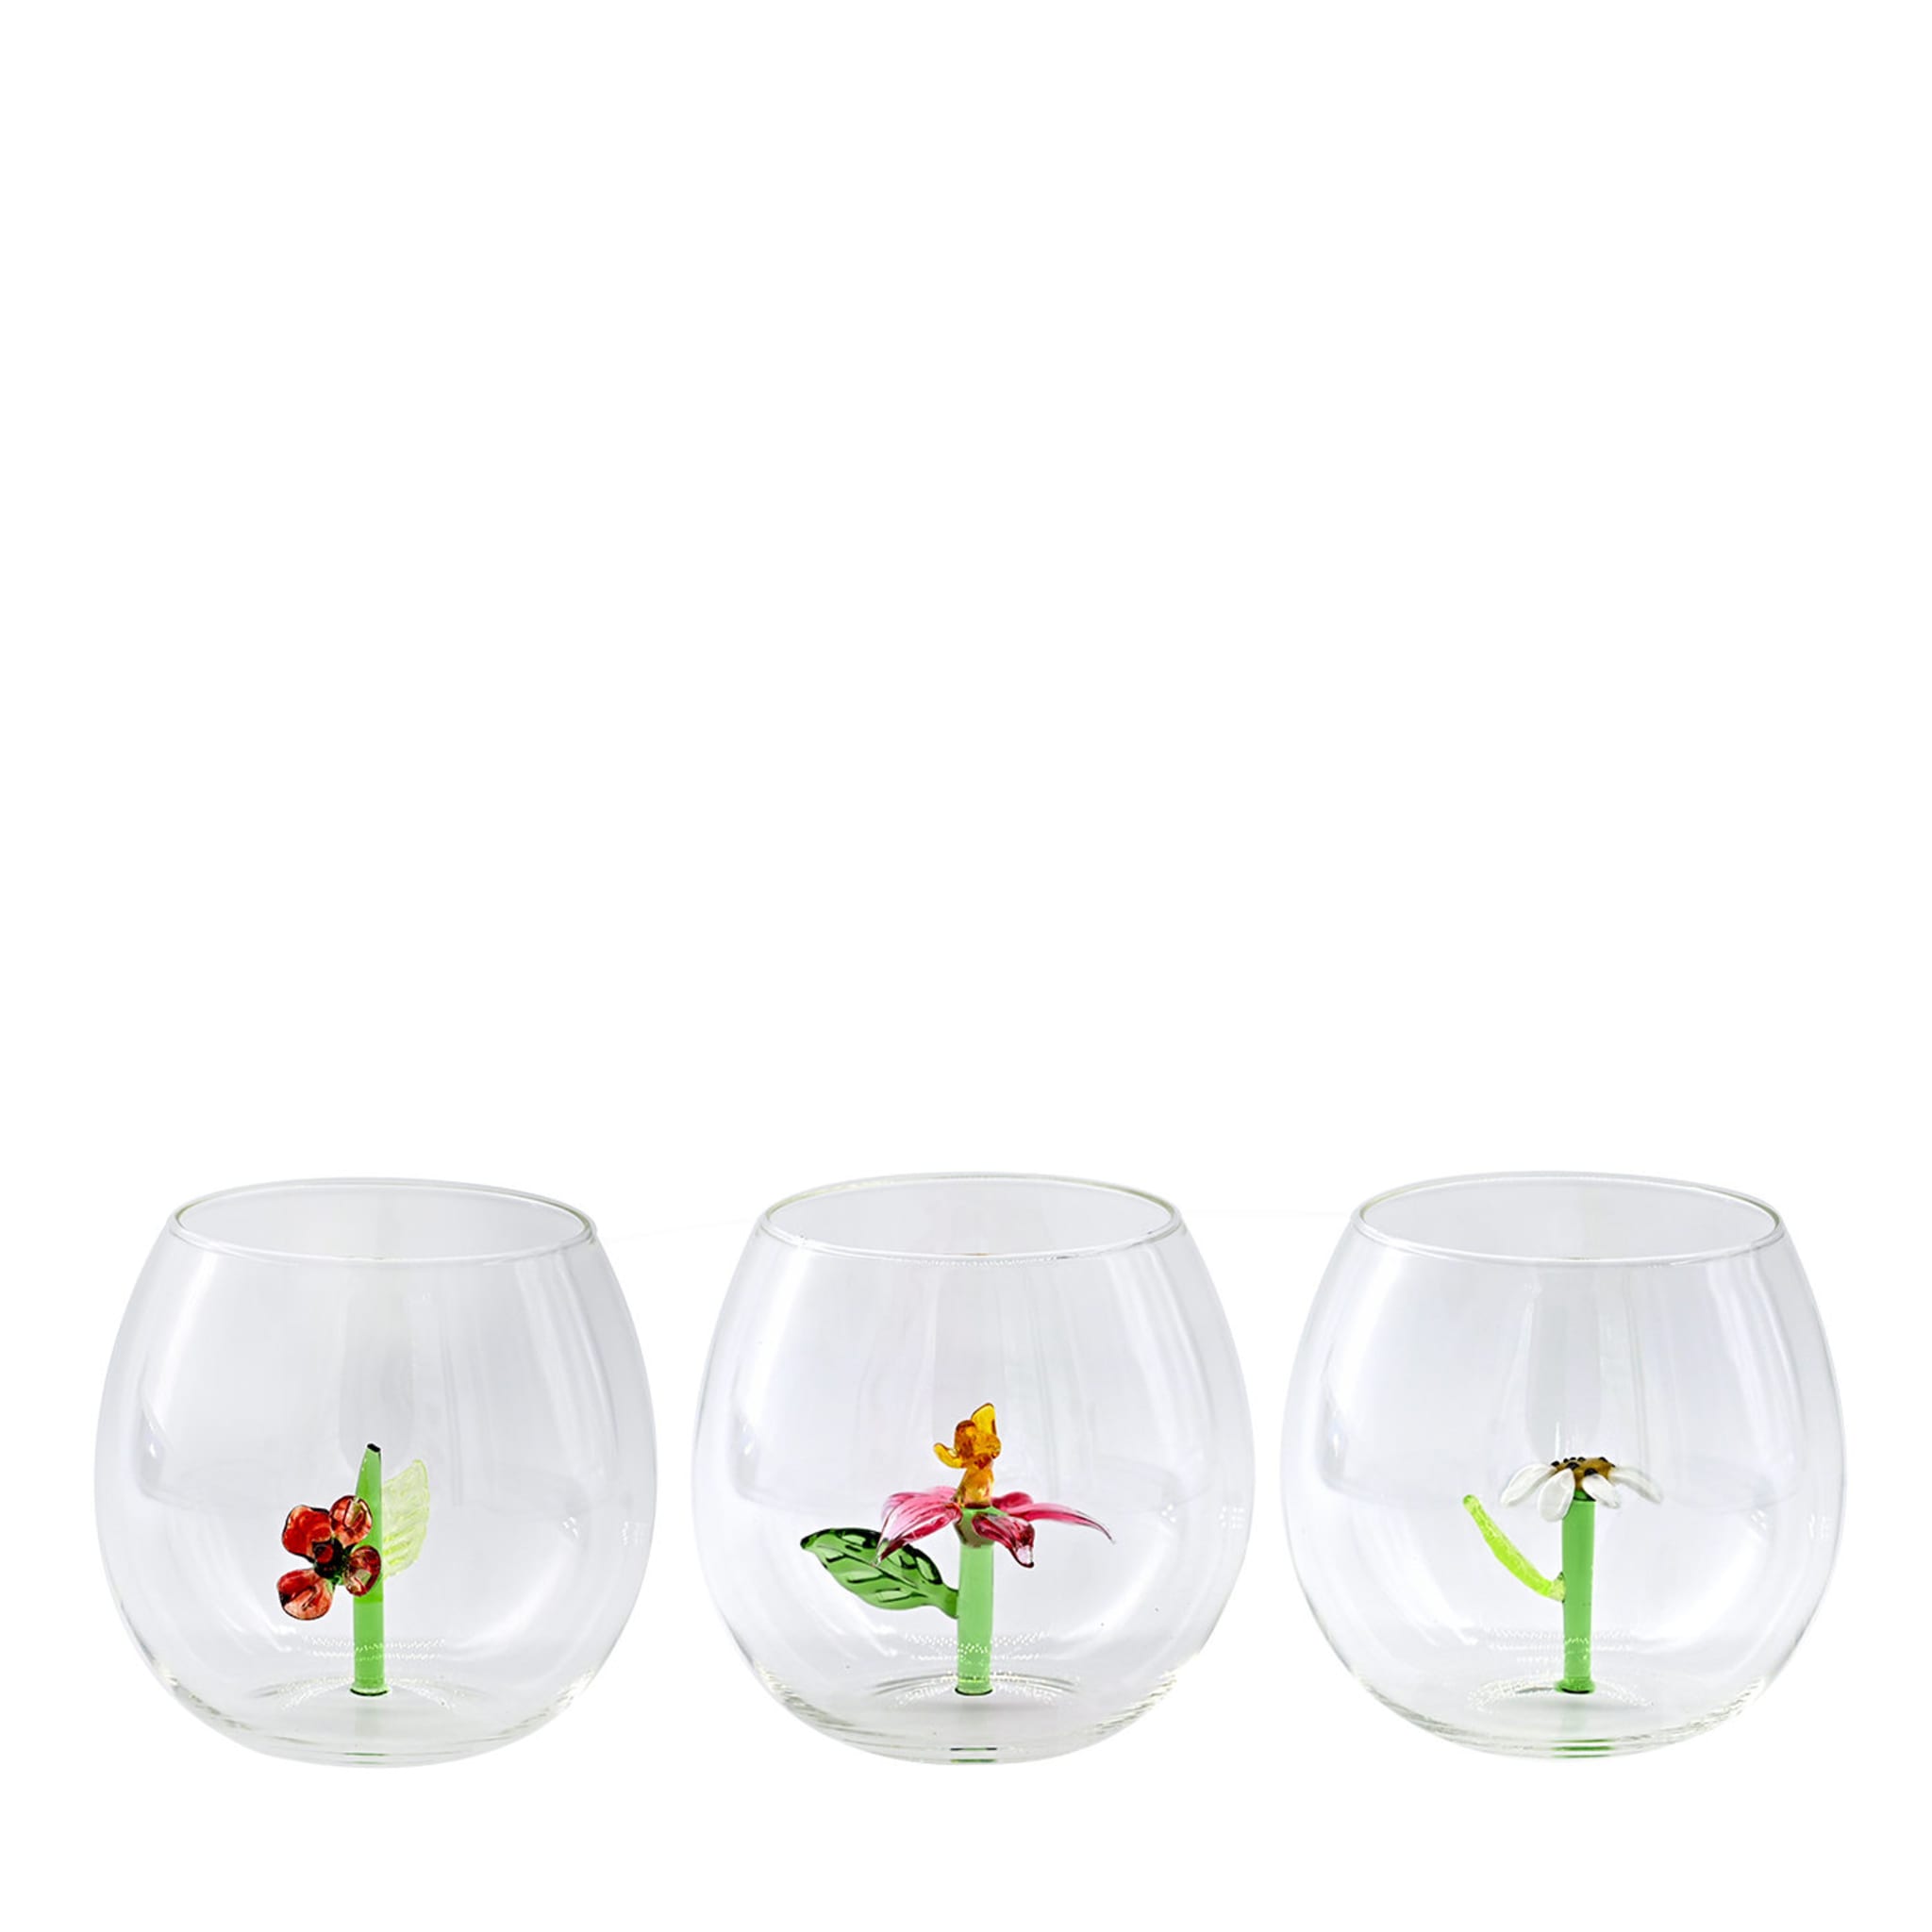 Flower Power Set of 6 Glasses - Alternative view 1